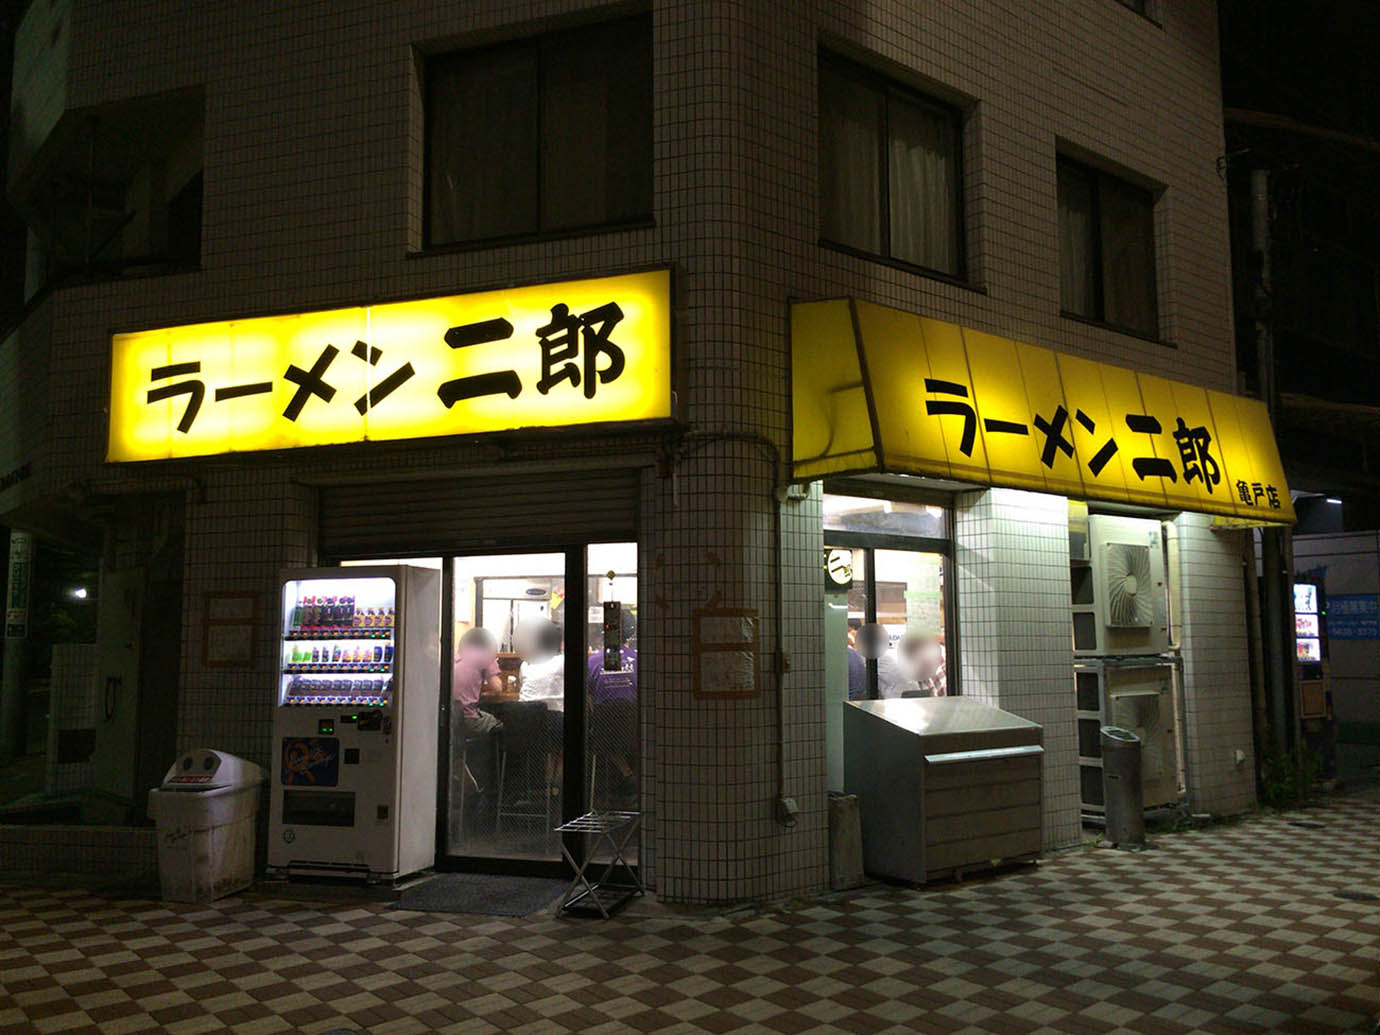 【話題】ラーメン二郎の店主がラーメン屋「山岡家」に行った結果 / 味の感想をネット公開